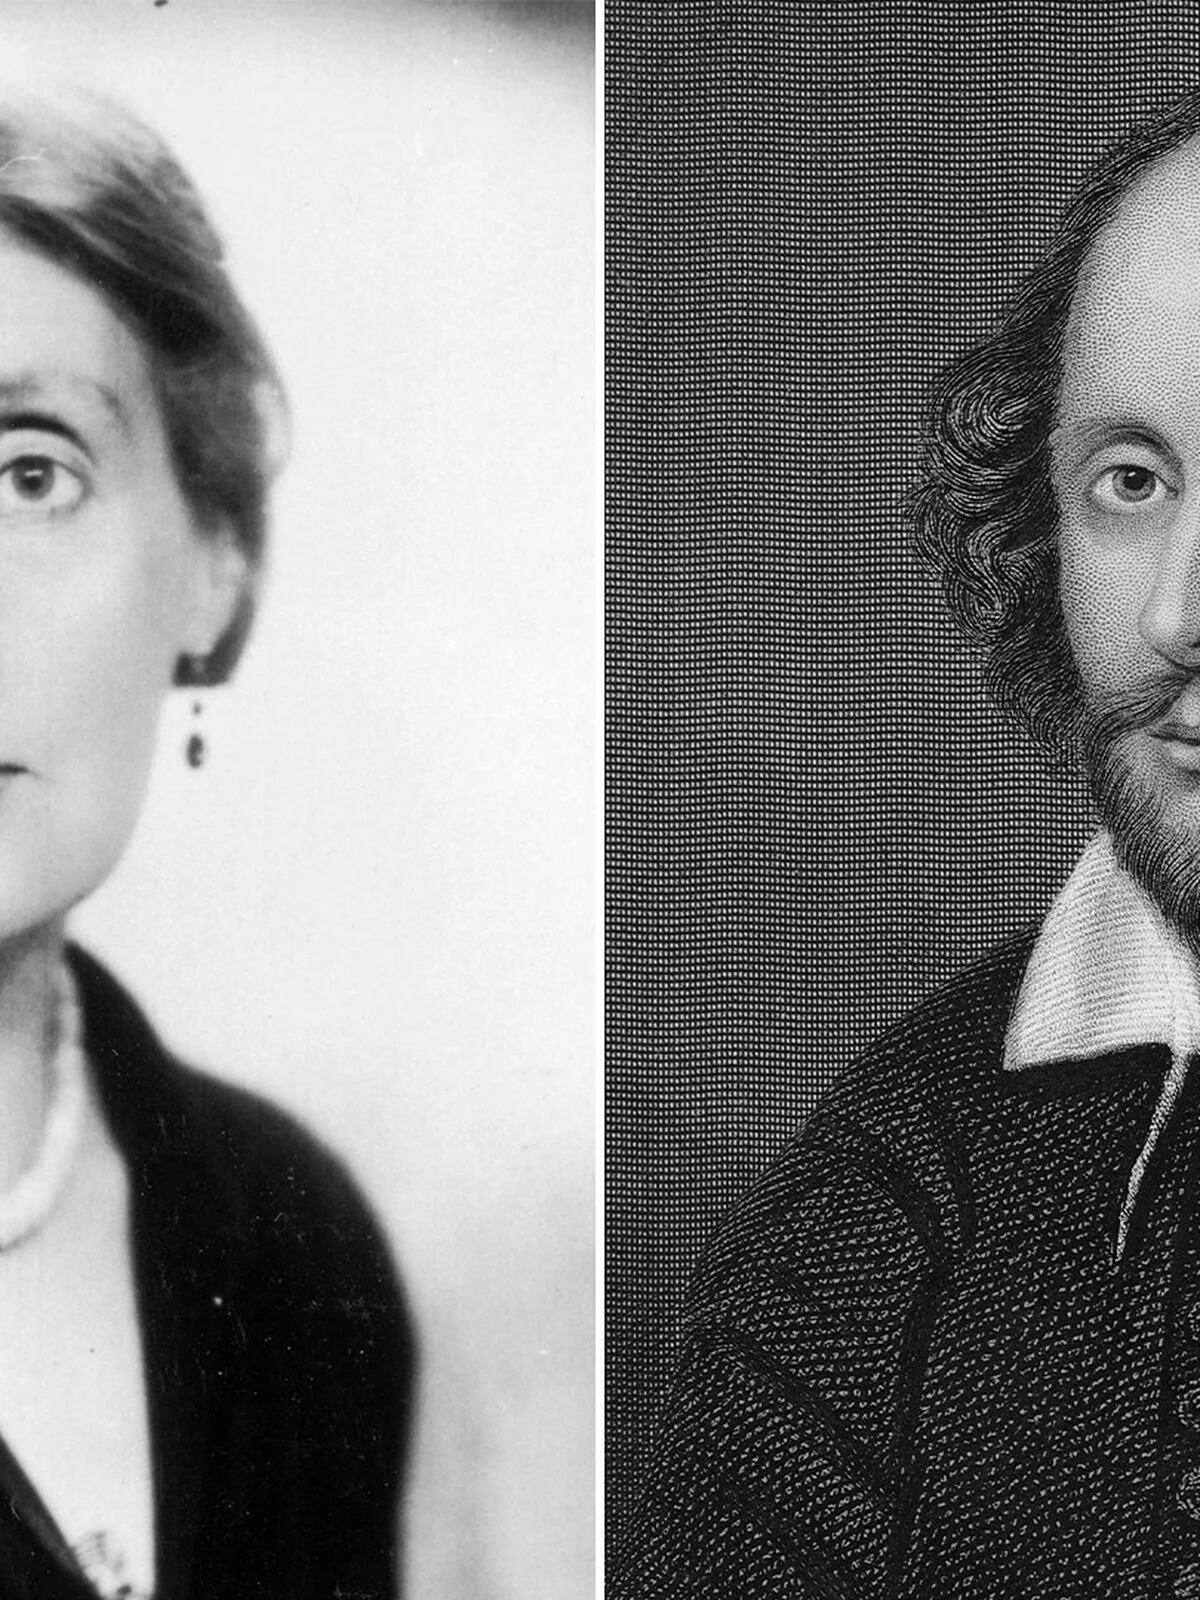 Los motivos de Virginia Woolf para estar segura de que le habría caído bien  a William Shakespeare - Infobae